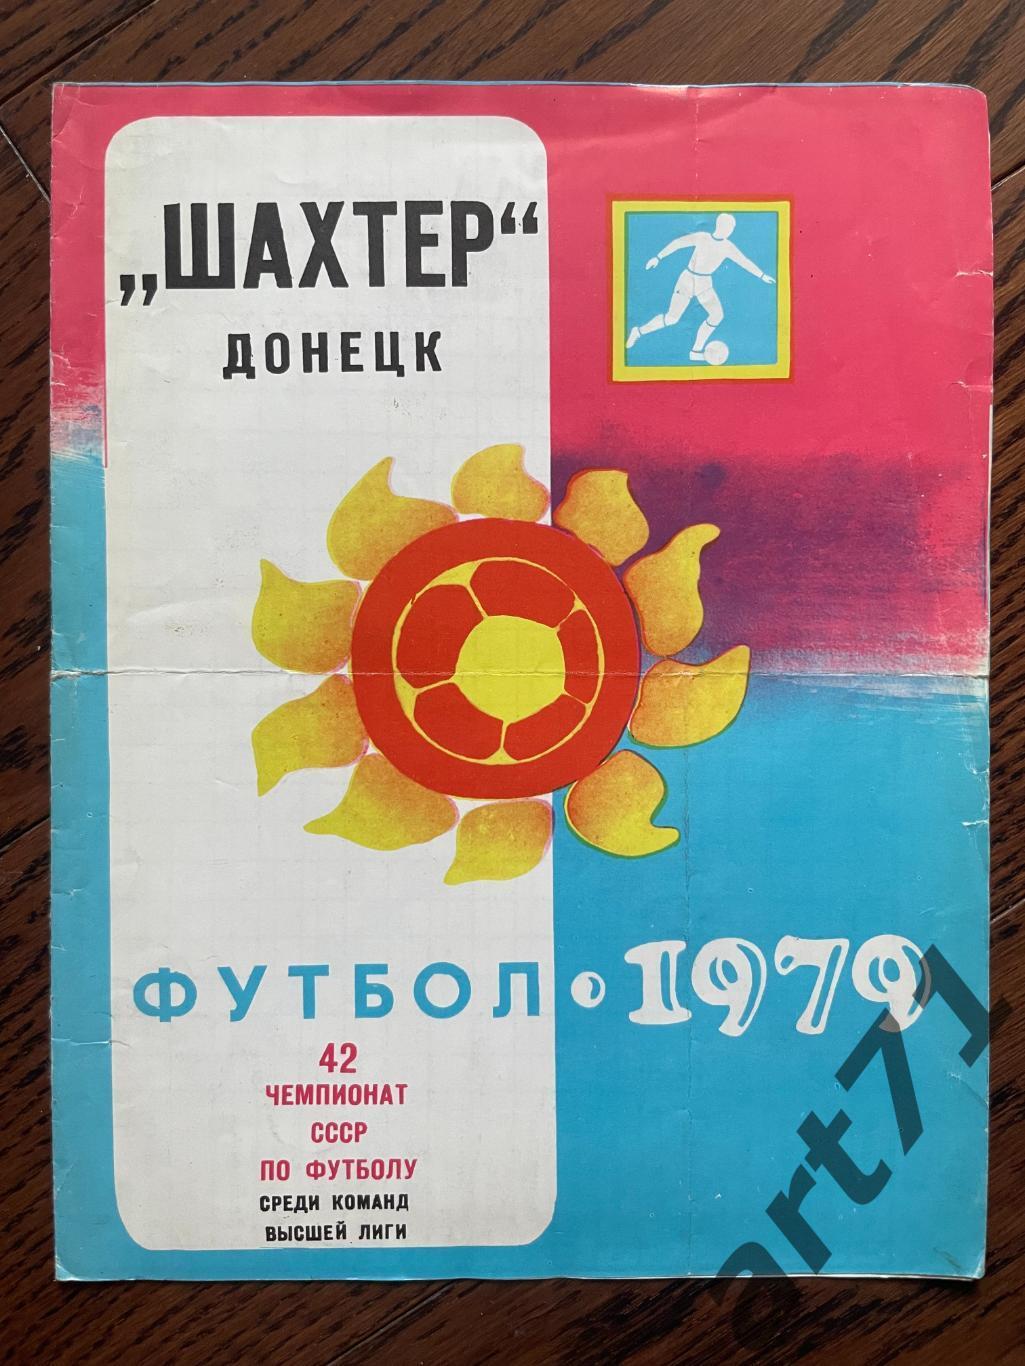 Шахтер Донецк 1979. Таблица для заполнения, календарь игр